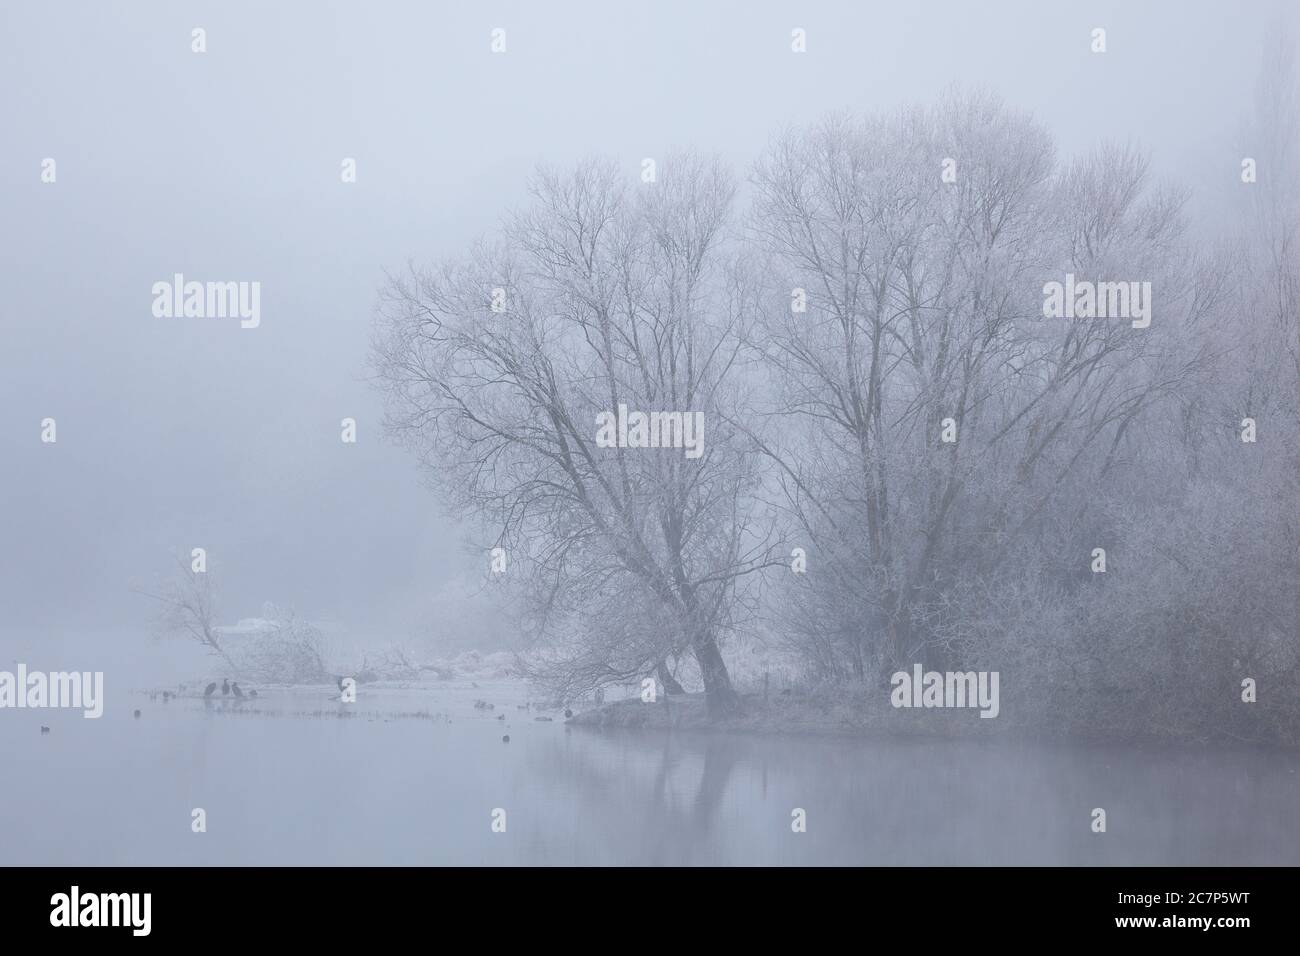 Wie ein See liegt der Nantes - Brest Kanal an einem frostig nebligen Morgen im Winter da. Im Hintergrund sind Komorane, Stockenten und ein Reiher zu s Stock Photo